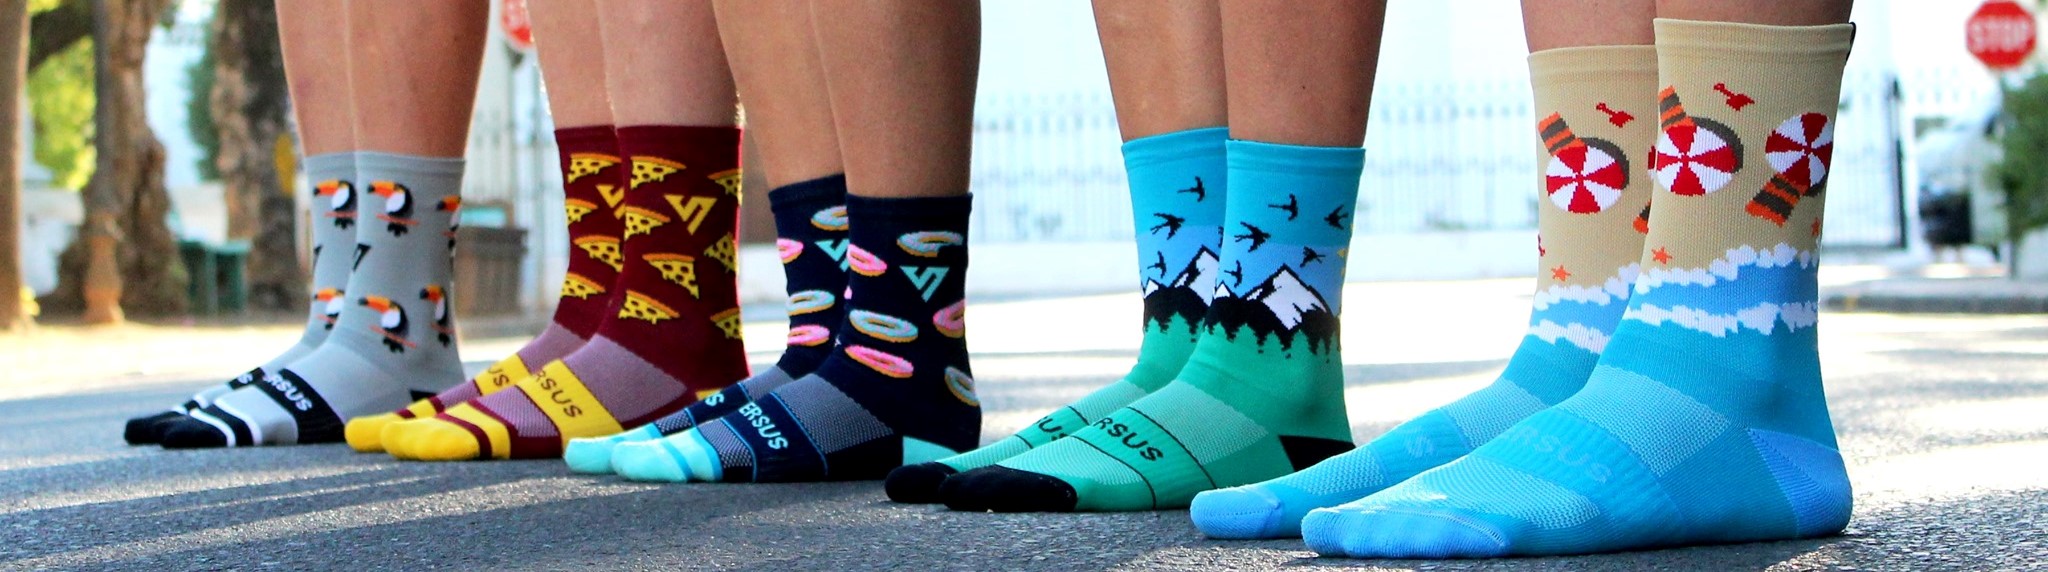 sportovní ponožky versus socks versussocks.cz2